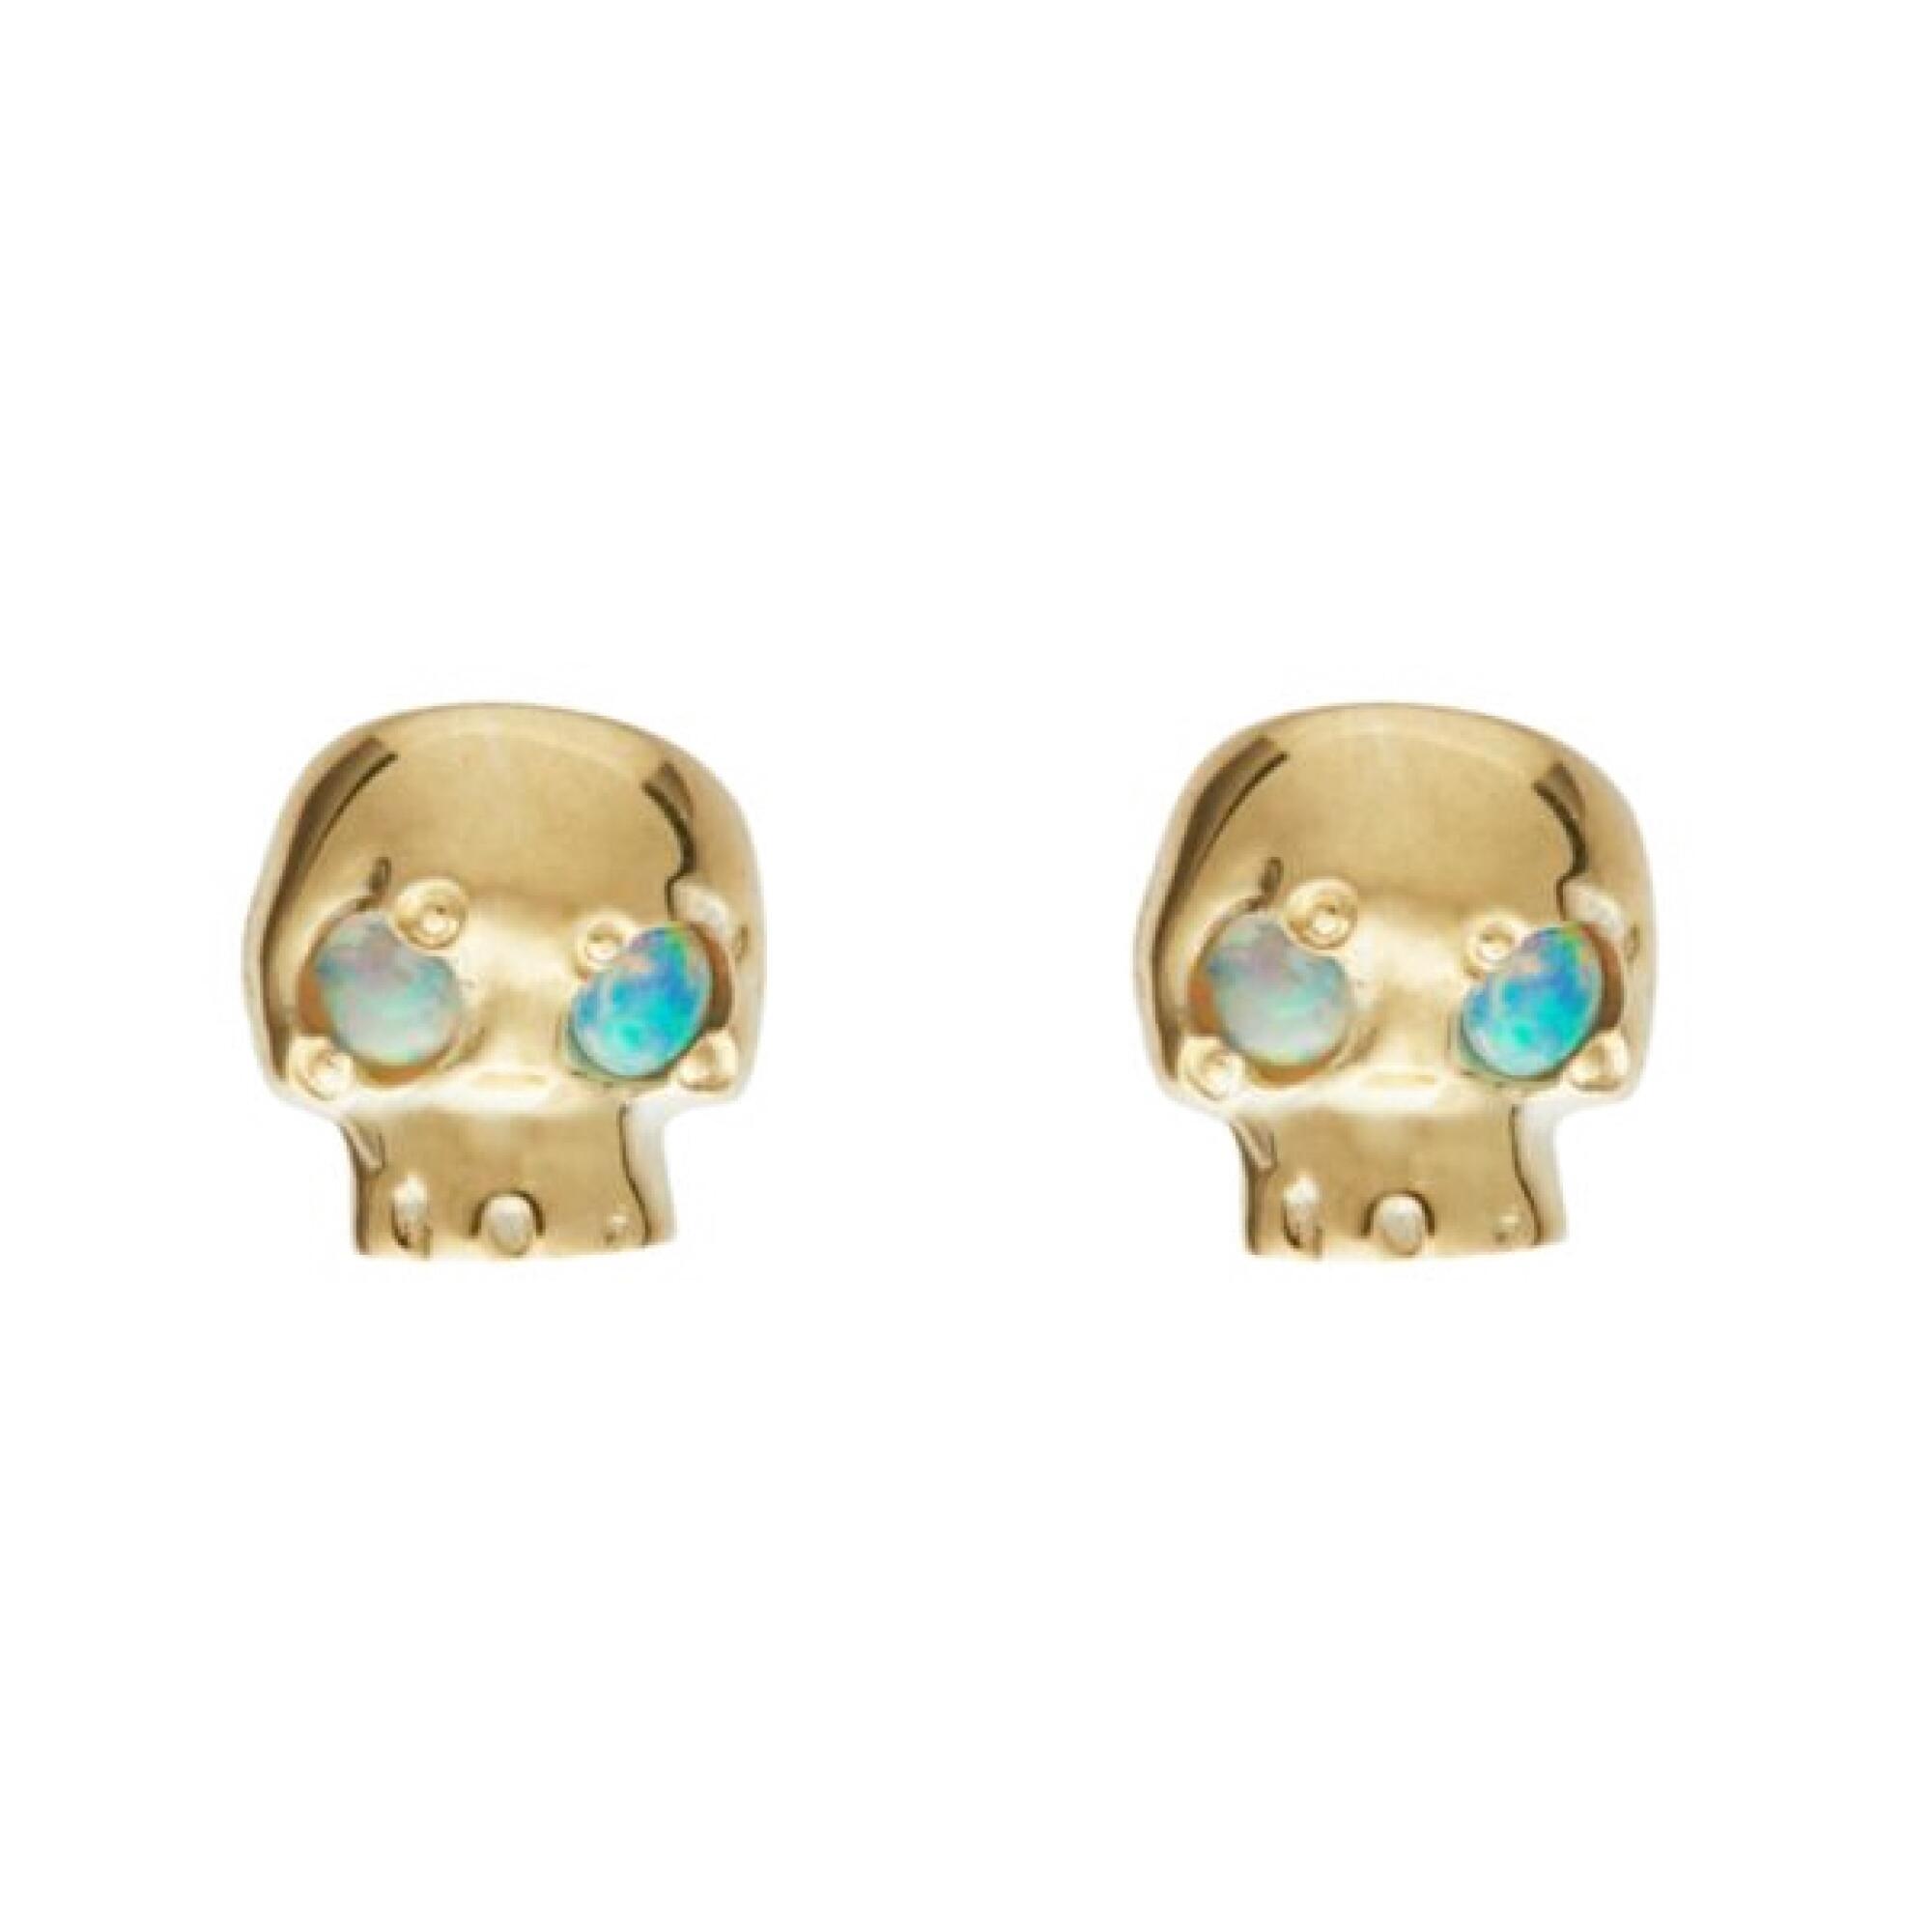 Skull earrings by Talon Jewelry